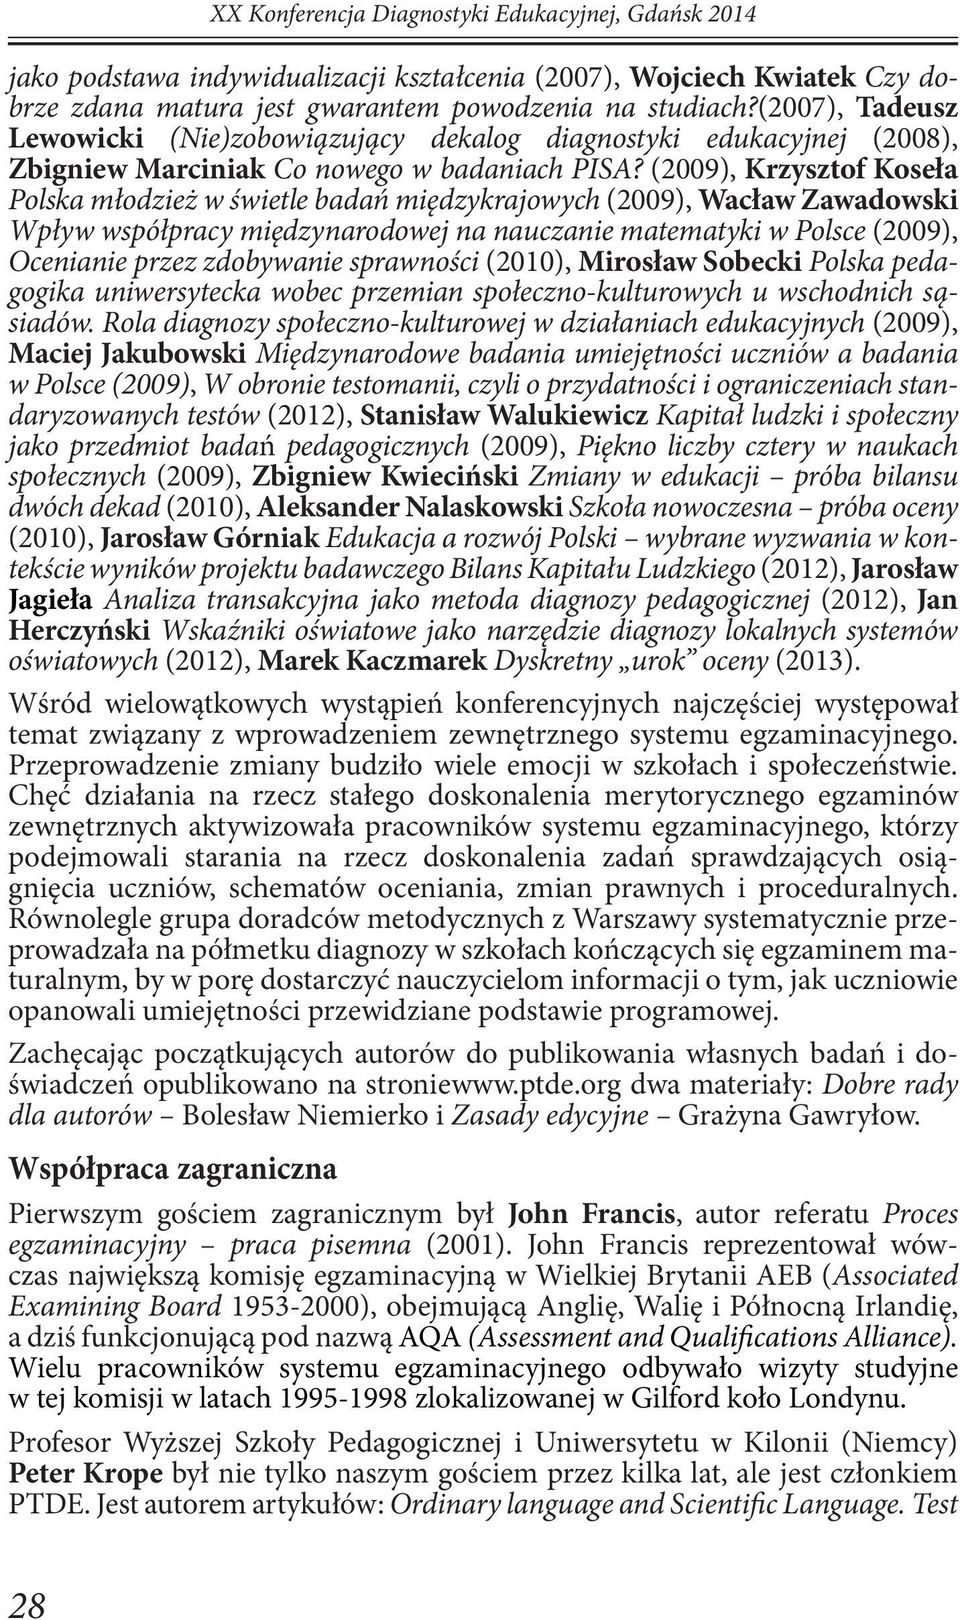 (2009), Krzysztof Koseła Polska młodzież w świetle badań międzykrajowych (2009), Wacław Zawadowski Wpływ współpracy międzynarodowej na nauczanie matematyki w Polsce (2009), Ocenianie przez zdobywanie